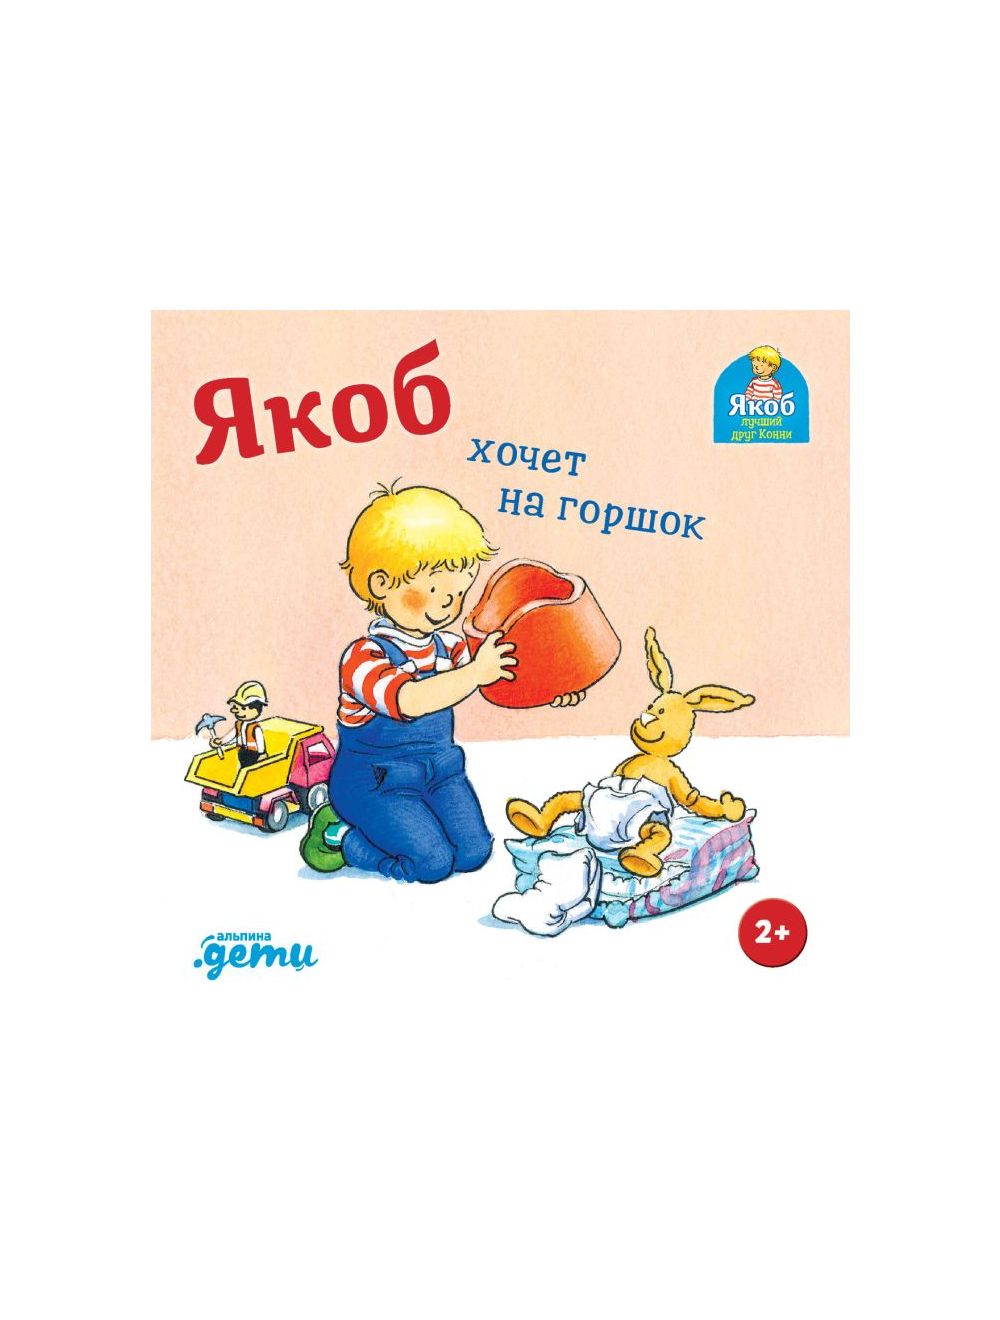 Книга Про горшок. Стихи на каждый день VoiceBook, язык Русский, купит книгу онлайн на вторсырье-м.рф